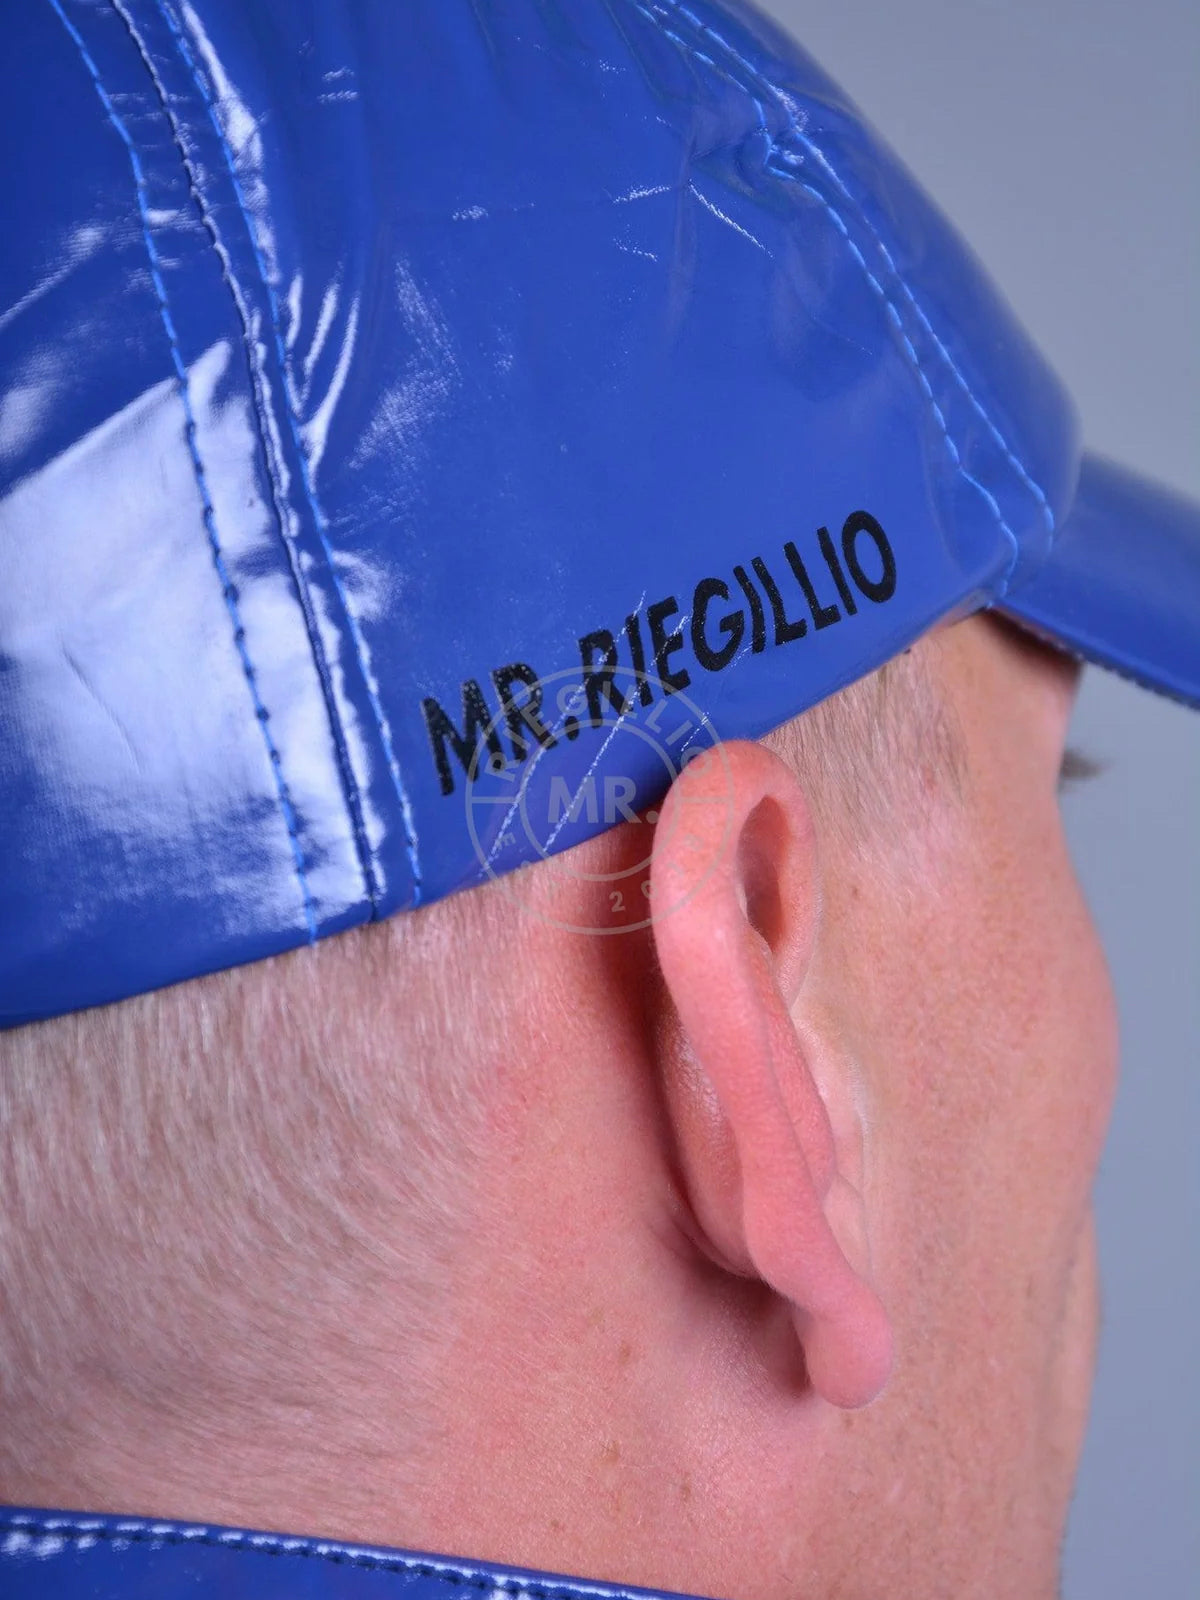 MR. ¡Riegillio - Gorra de PVC Azul